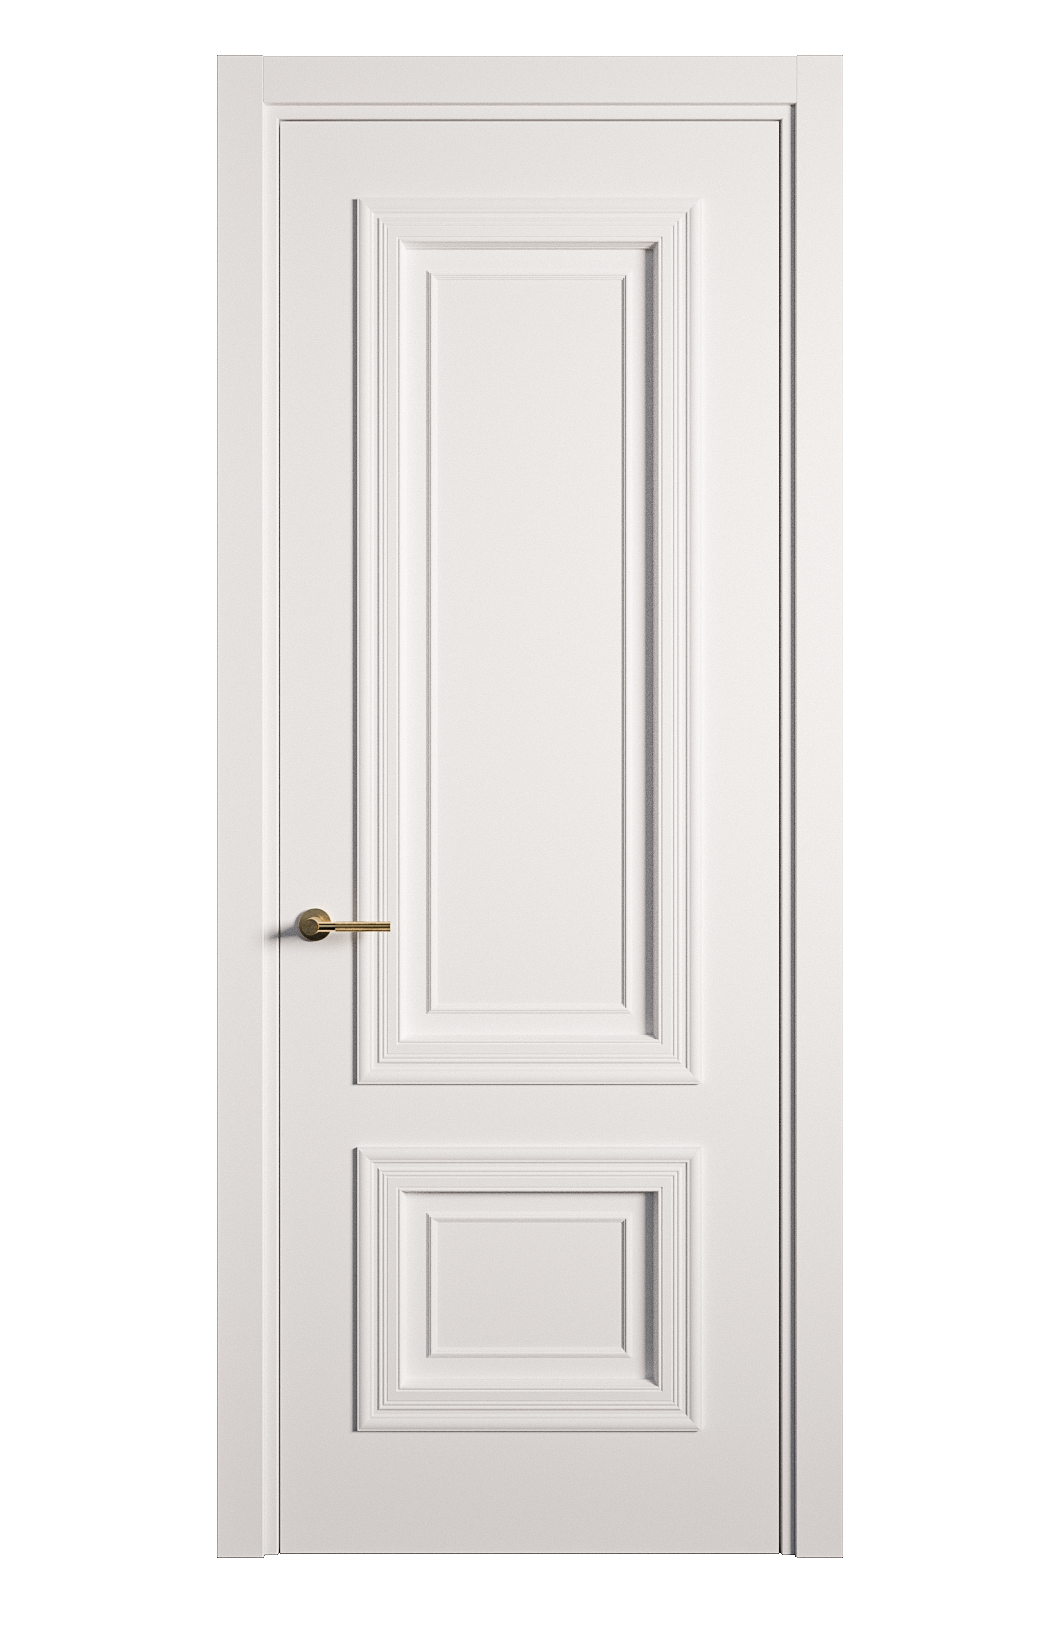 Межкомнатная дверь Мальта-1 глухая эмаль ral 9003 26981